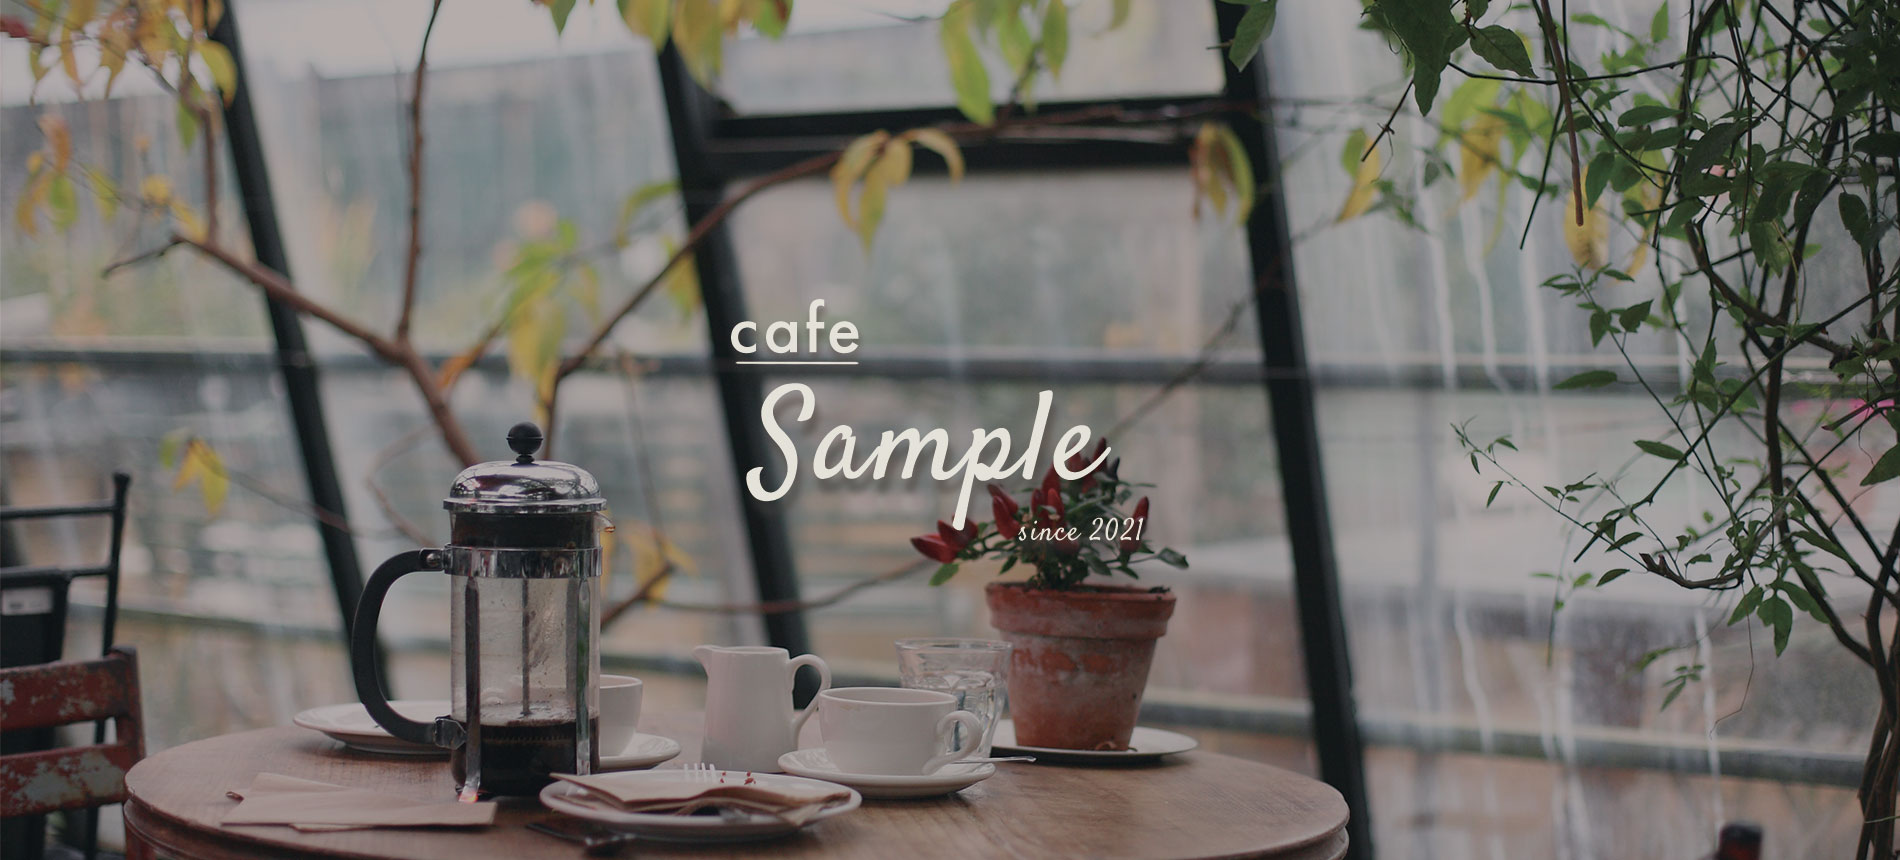 cafe sample